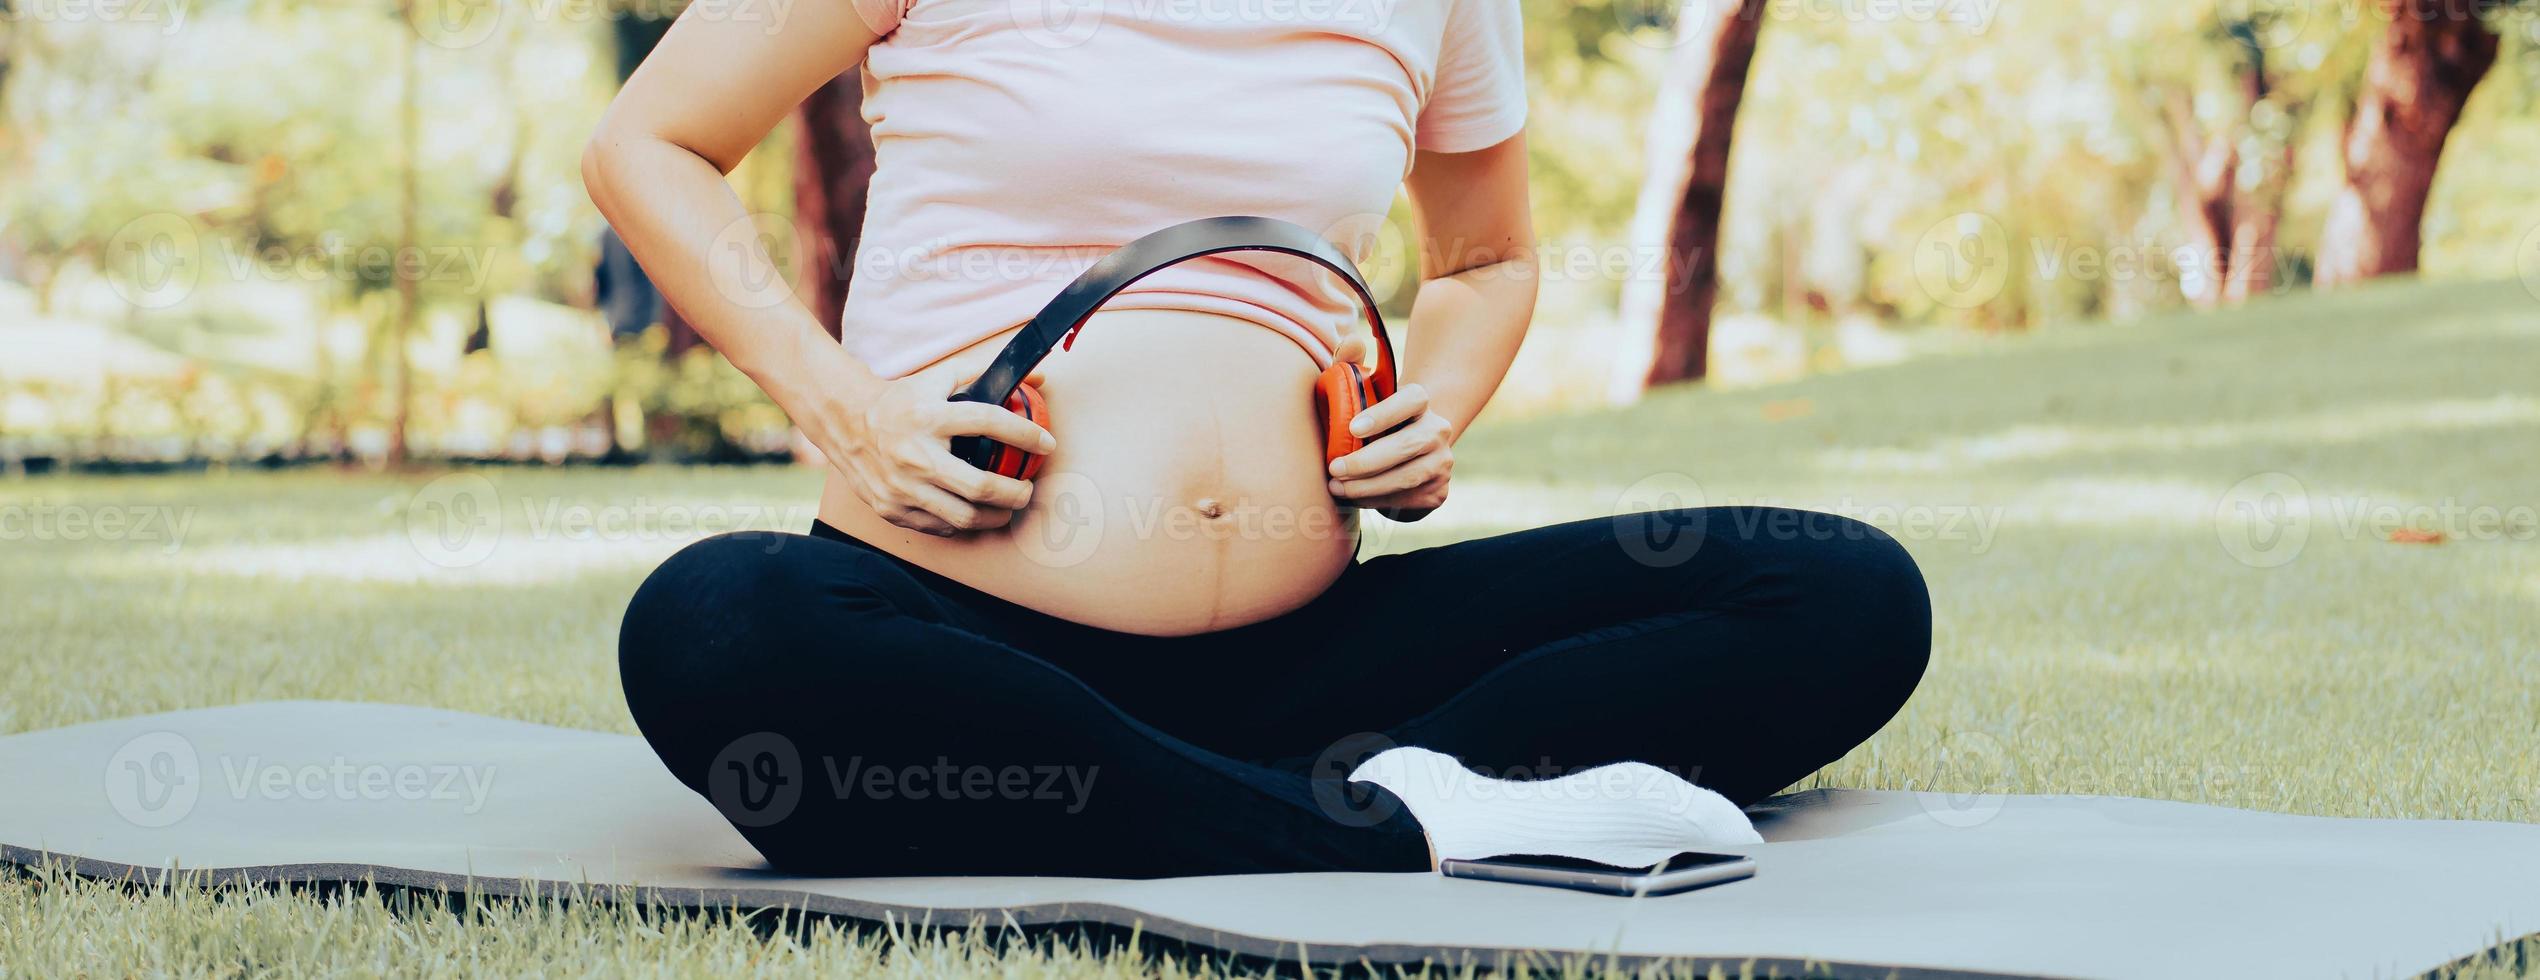 la donna incinta seduta fuori nel parco che tocca la sua grande pancia con le cuffie rosse consente al suo bambino di ascoltare una rilassante musica armoniosa. viaggio di gravidanza, maternità e concetto di sviluppo del feto. foto